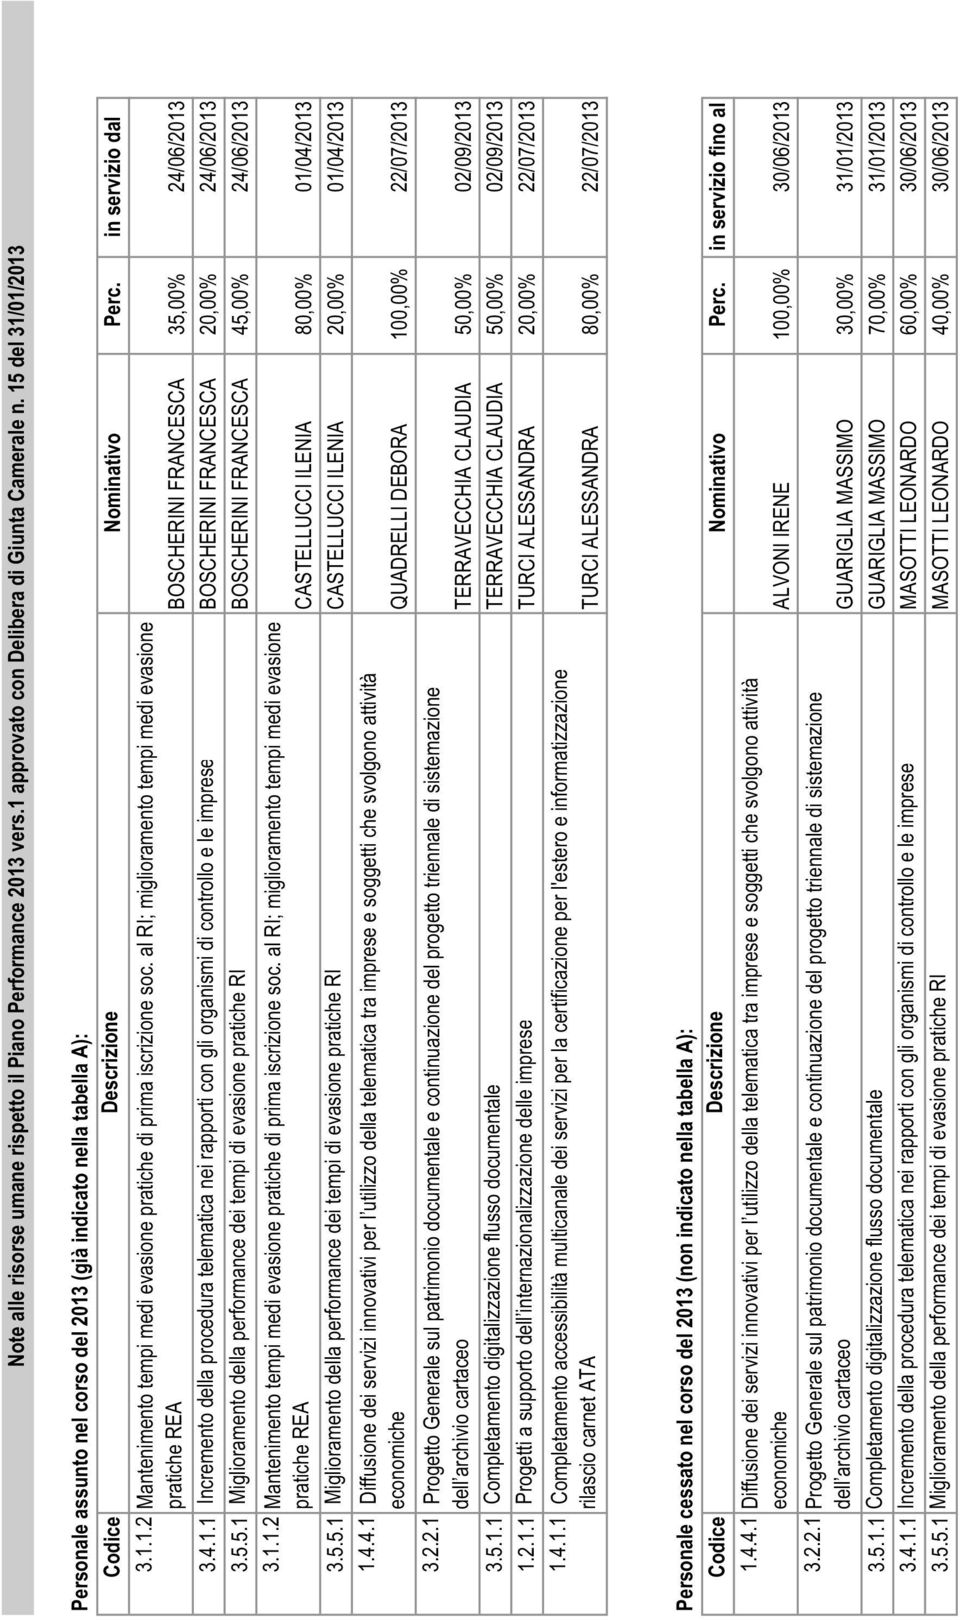 5.5.1 Miglioramento della performance dei tempi di evasione pratiche RI BOSCHERINI FRANCESCA 45,00% 24/06/2013 pratiche REA CASTELLUCCI ILENIA 80,00% 01/04/2013 3.5.5.1 Miglioramento della